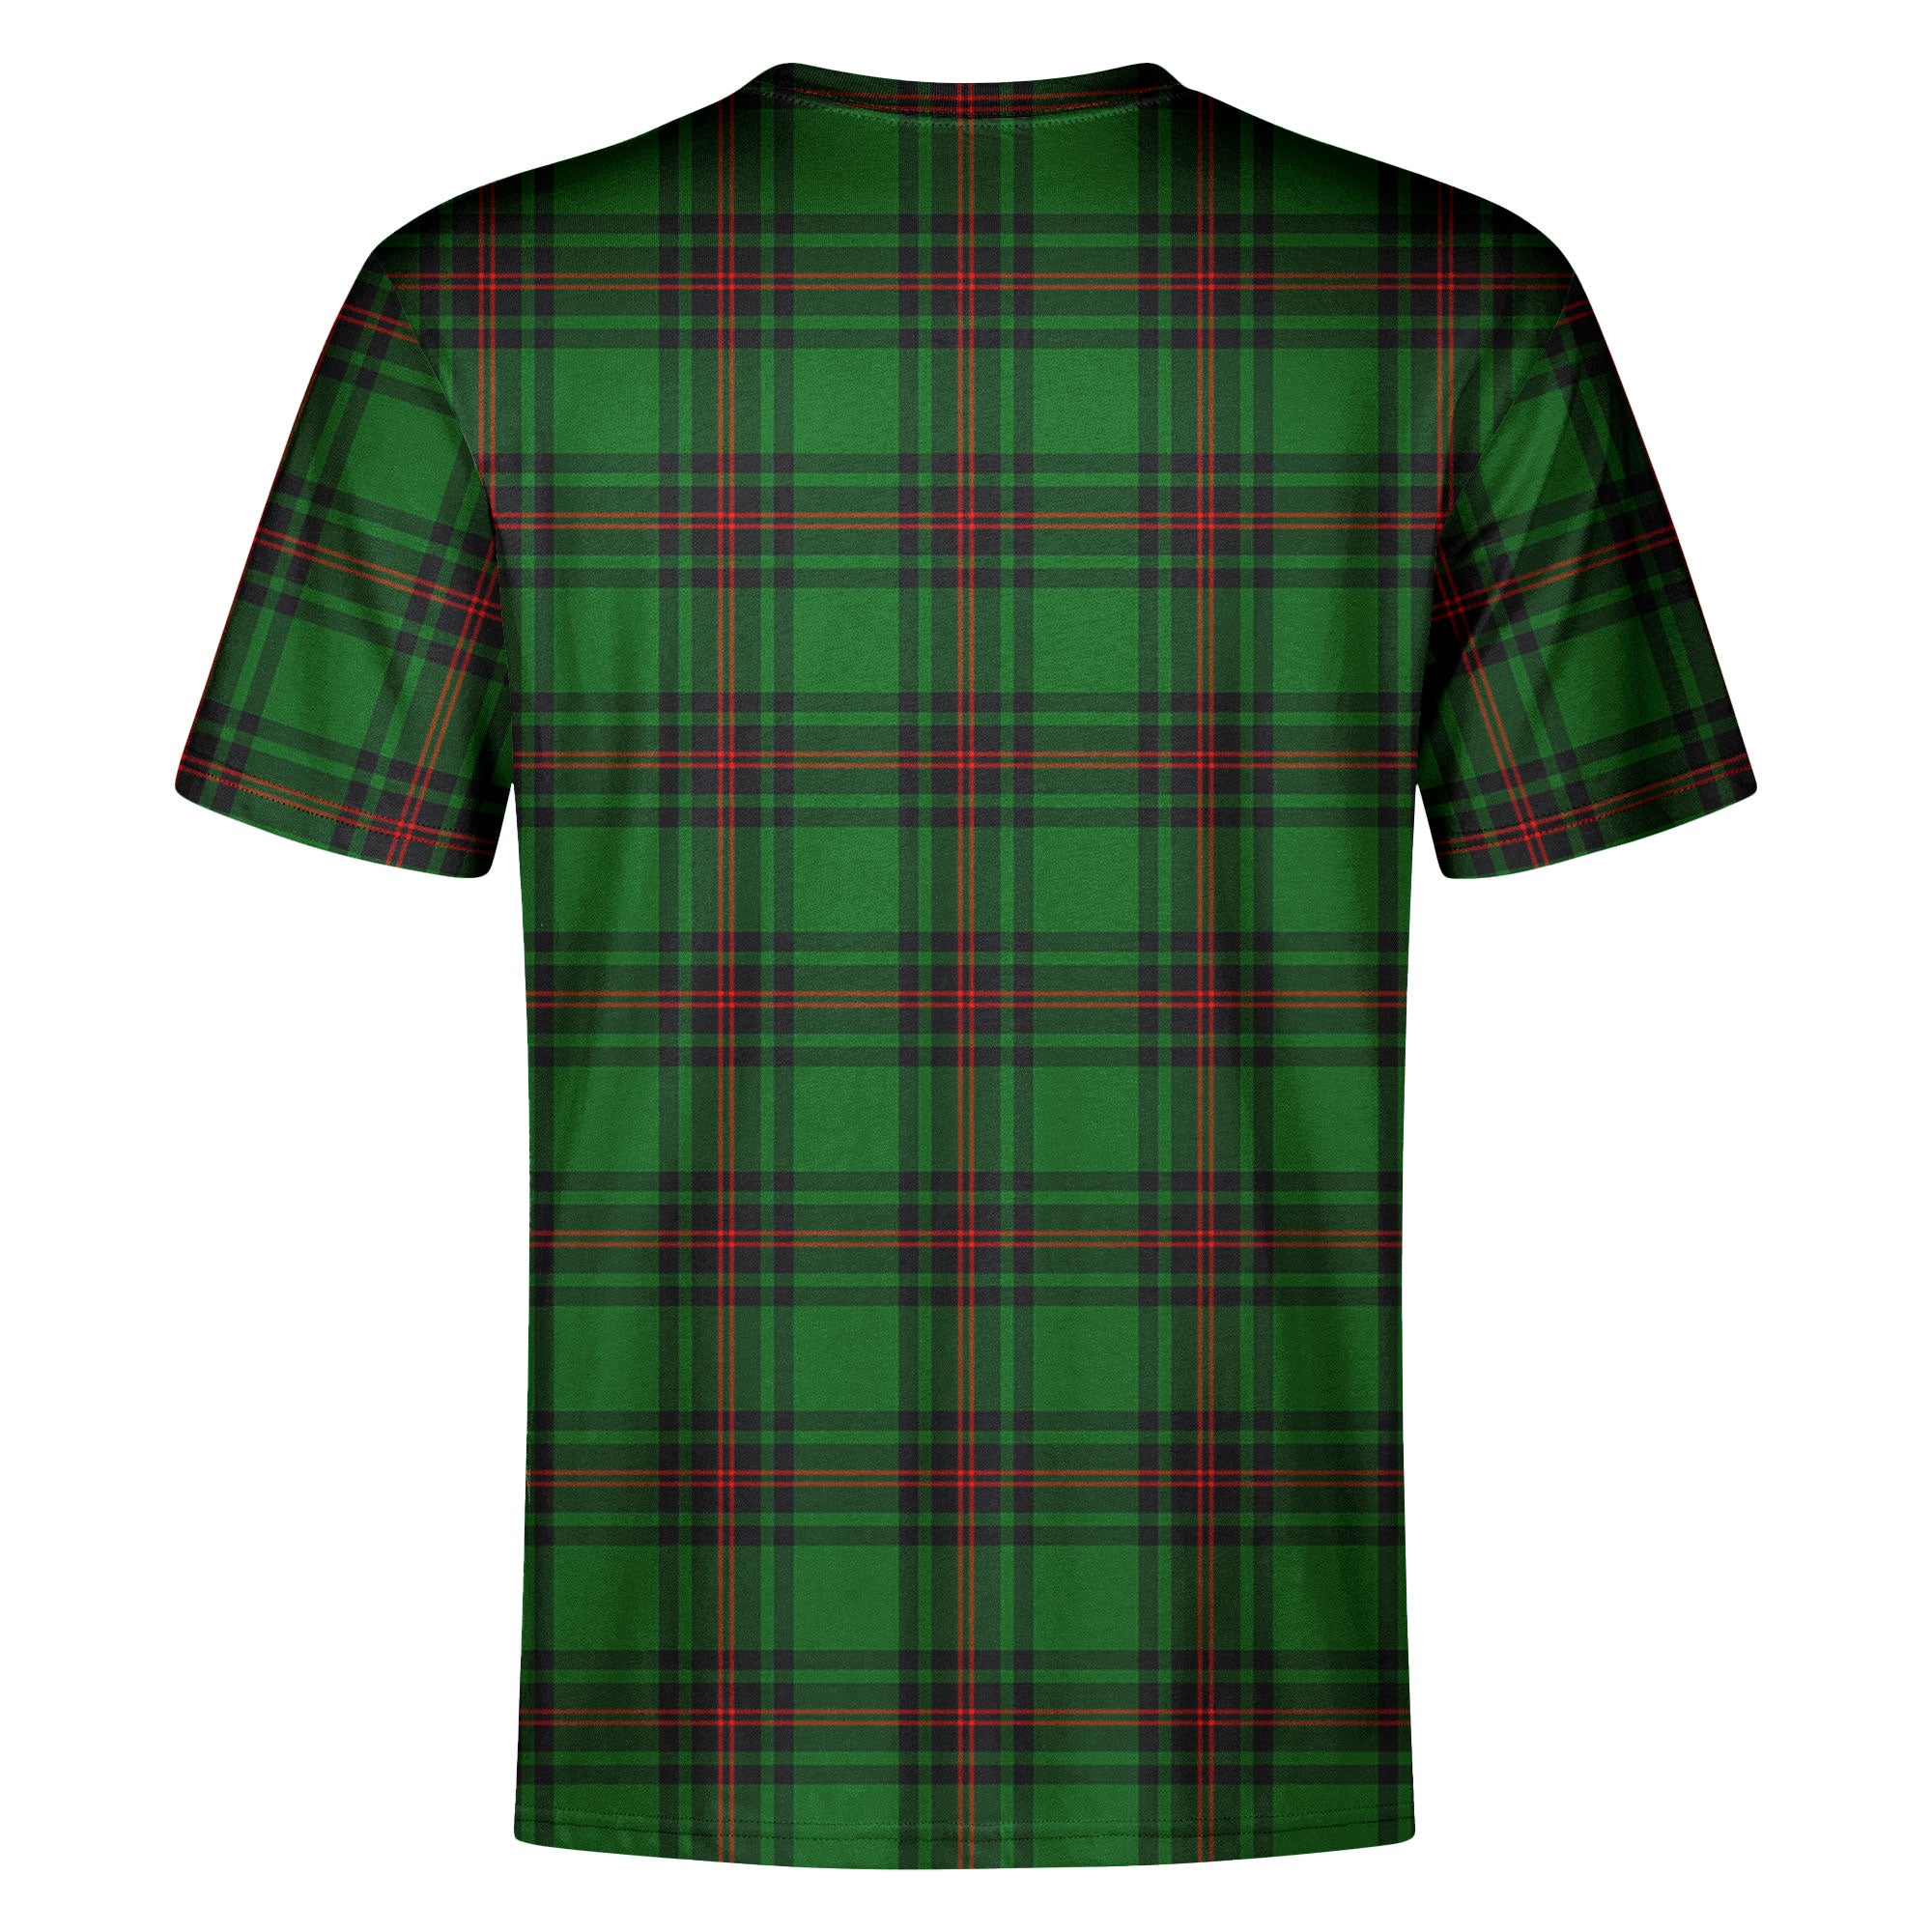 Orrock Tartan Crest T-shirt